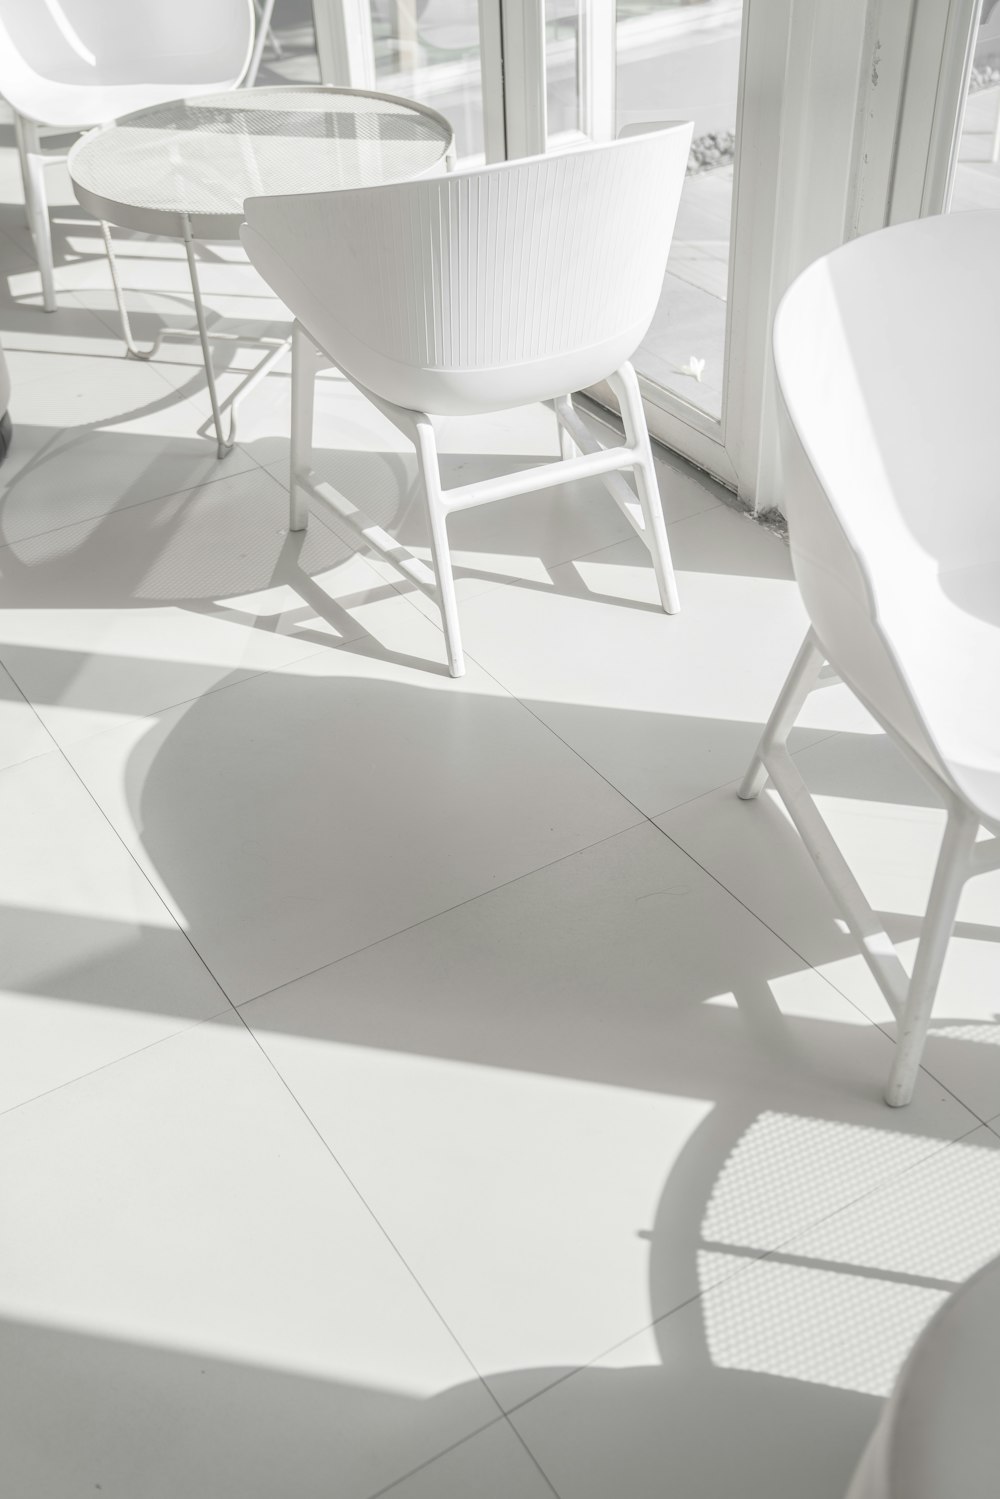 white chair on white floor tiles